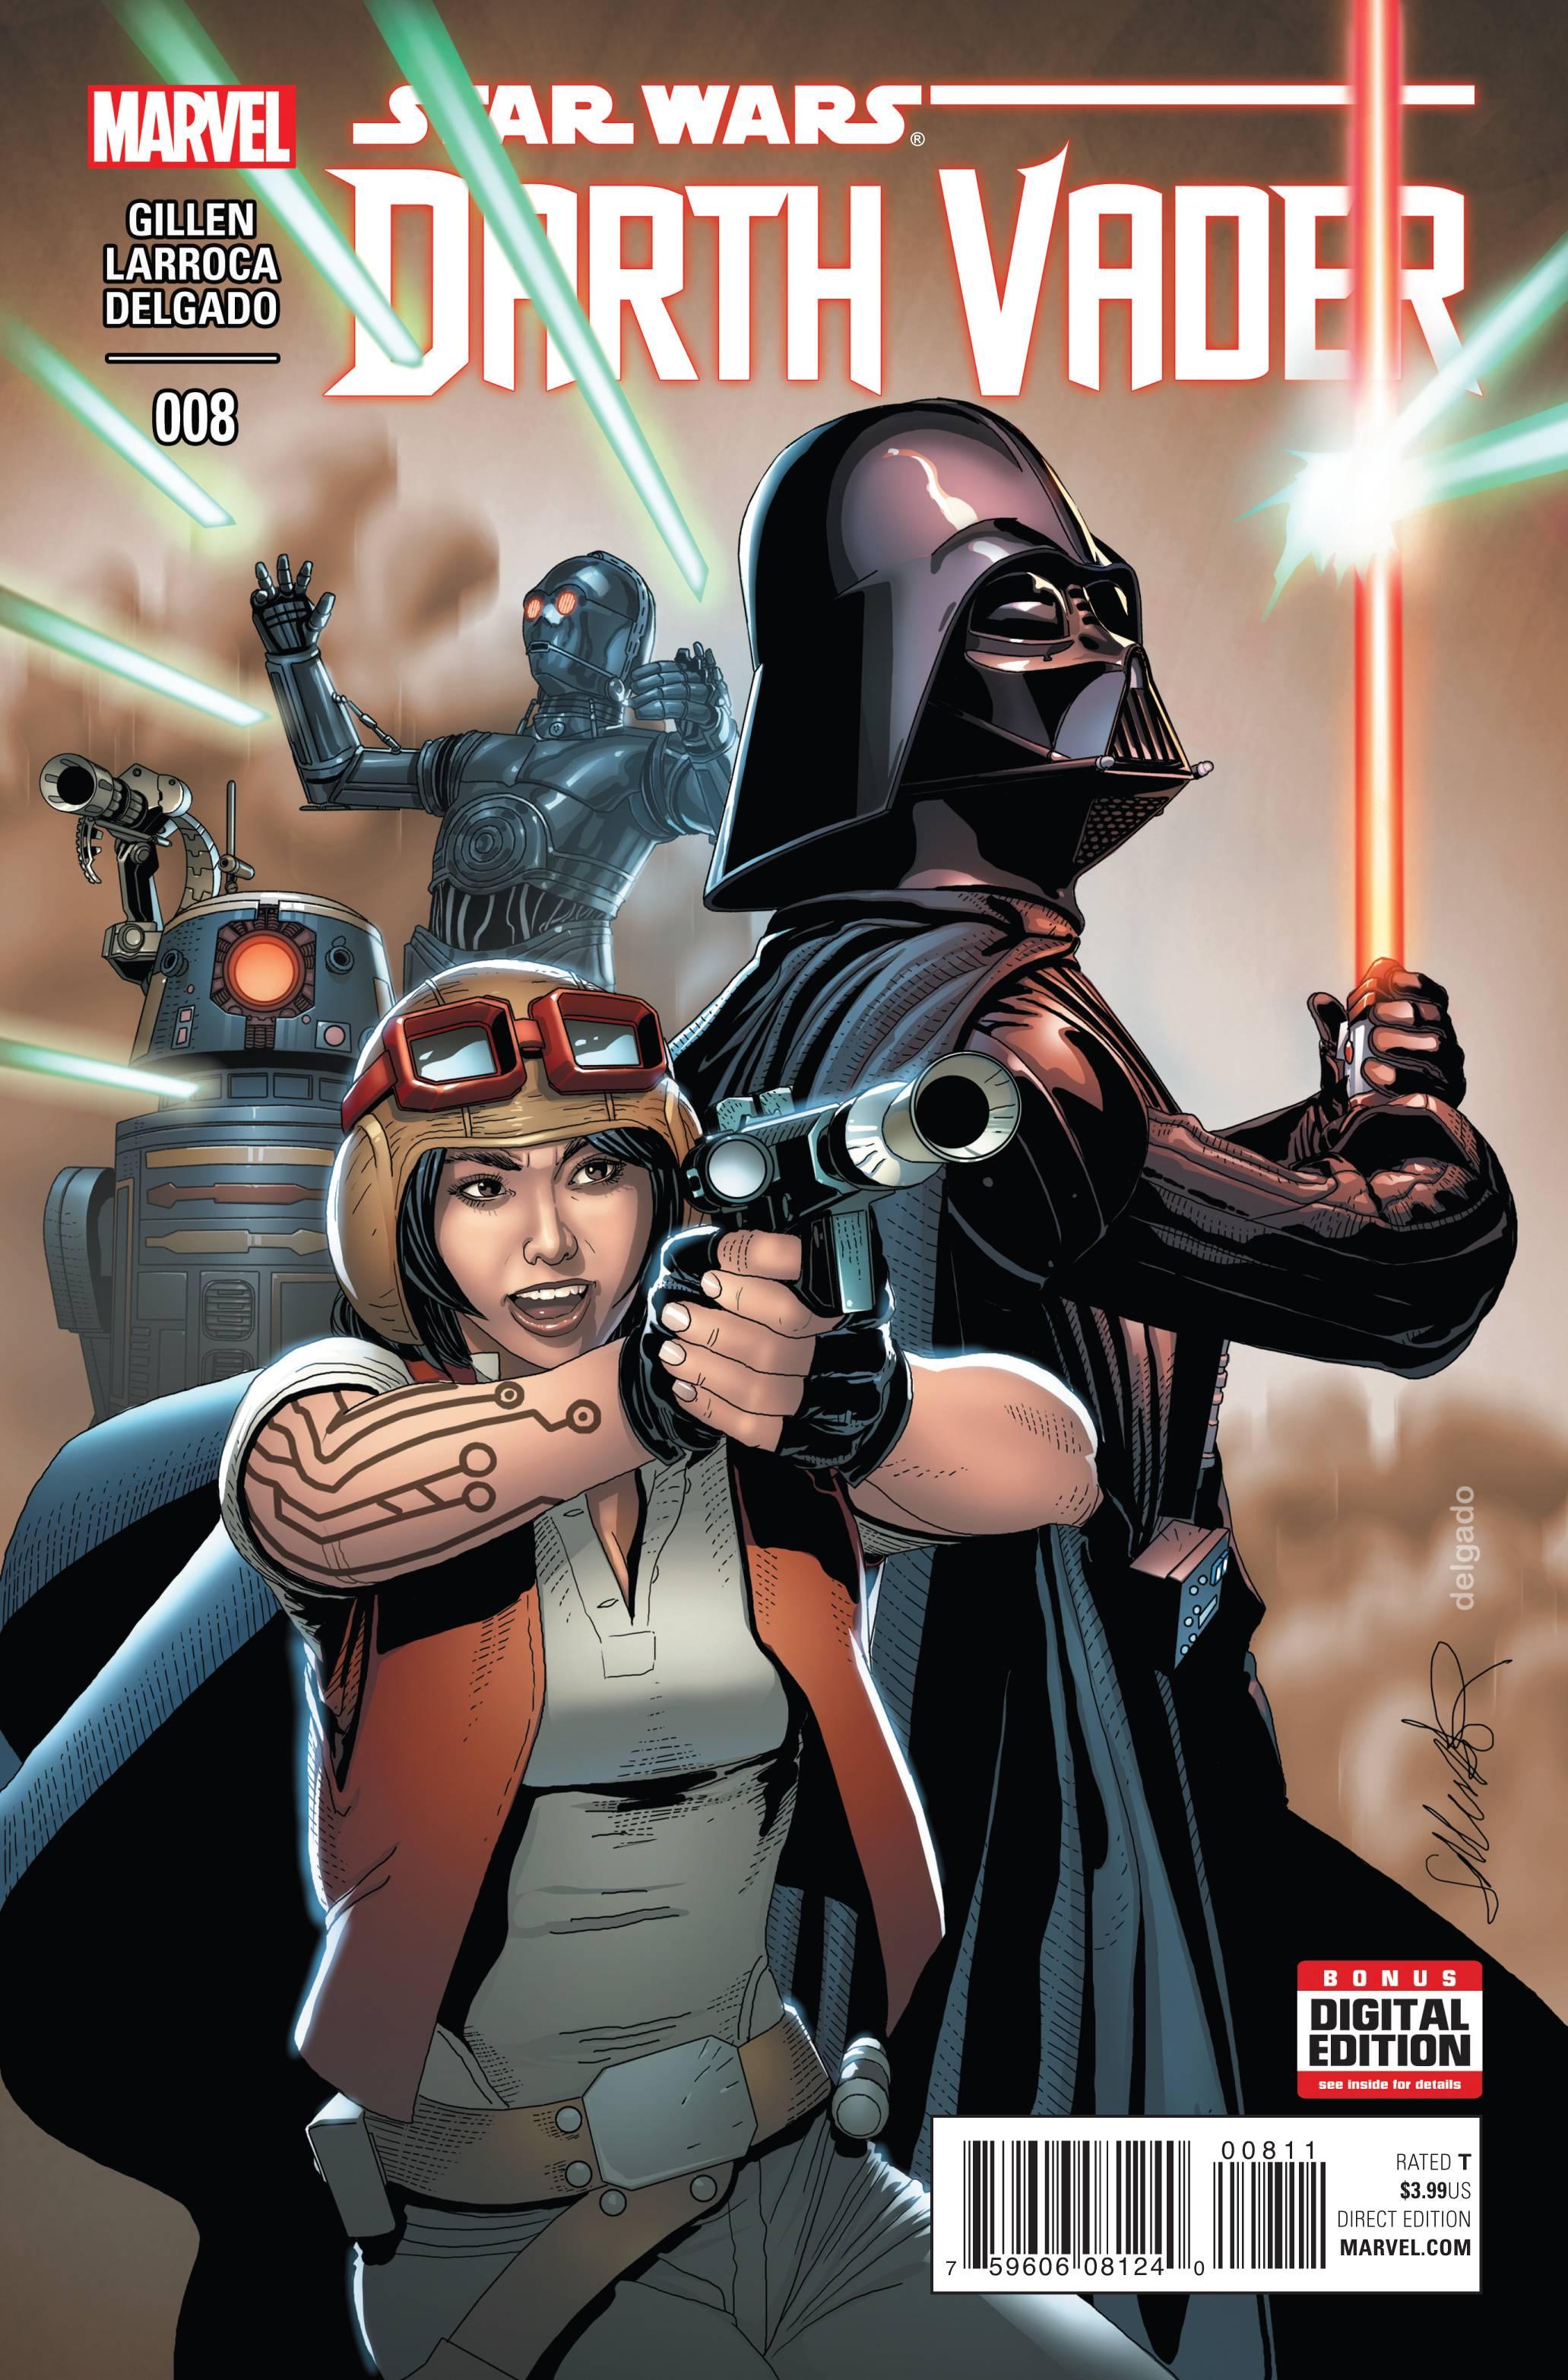 Darth Vader Vol. 1 #8